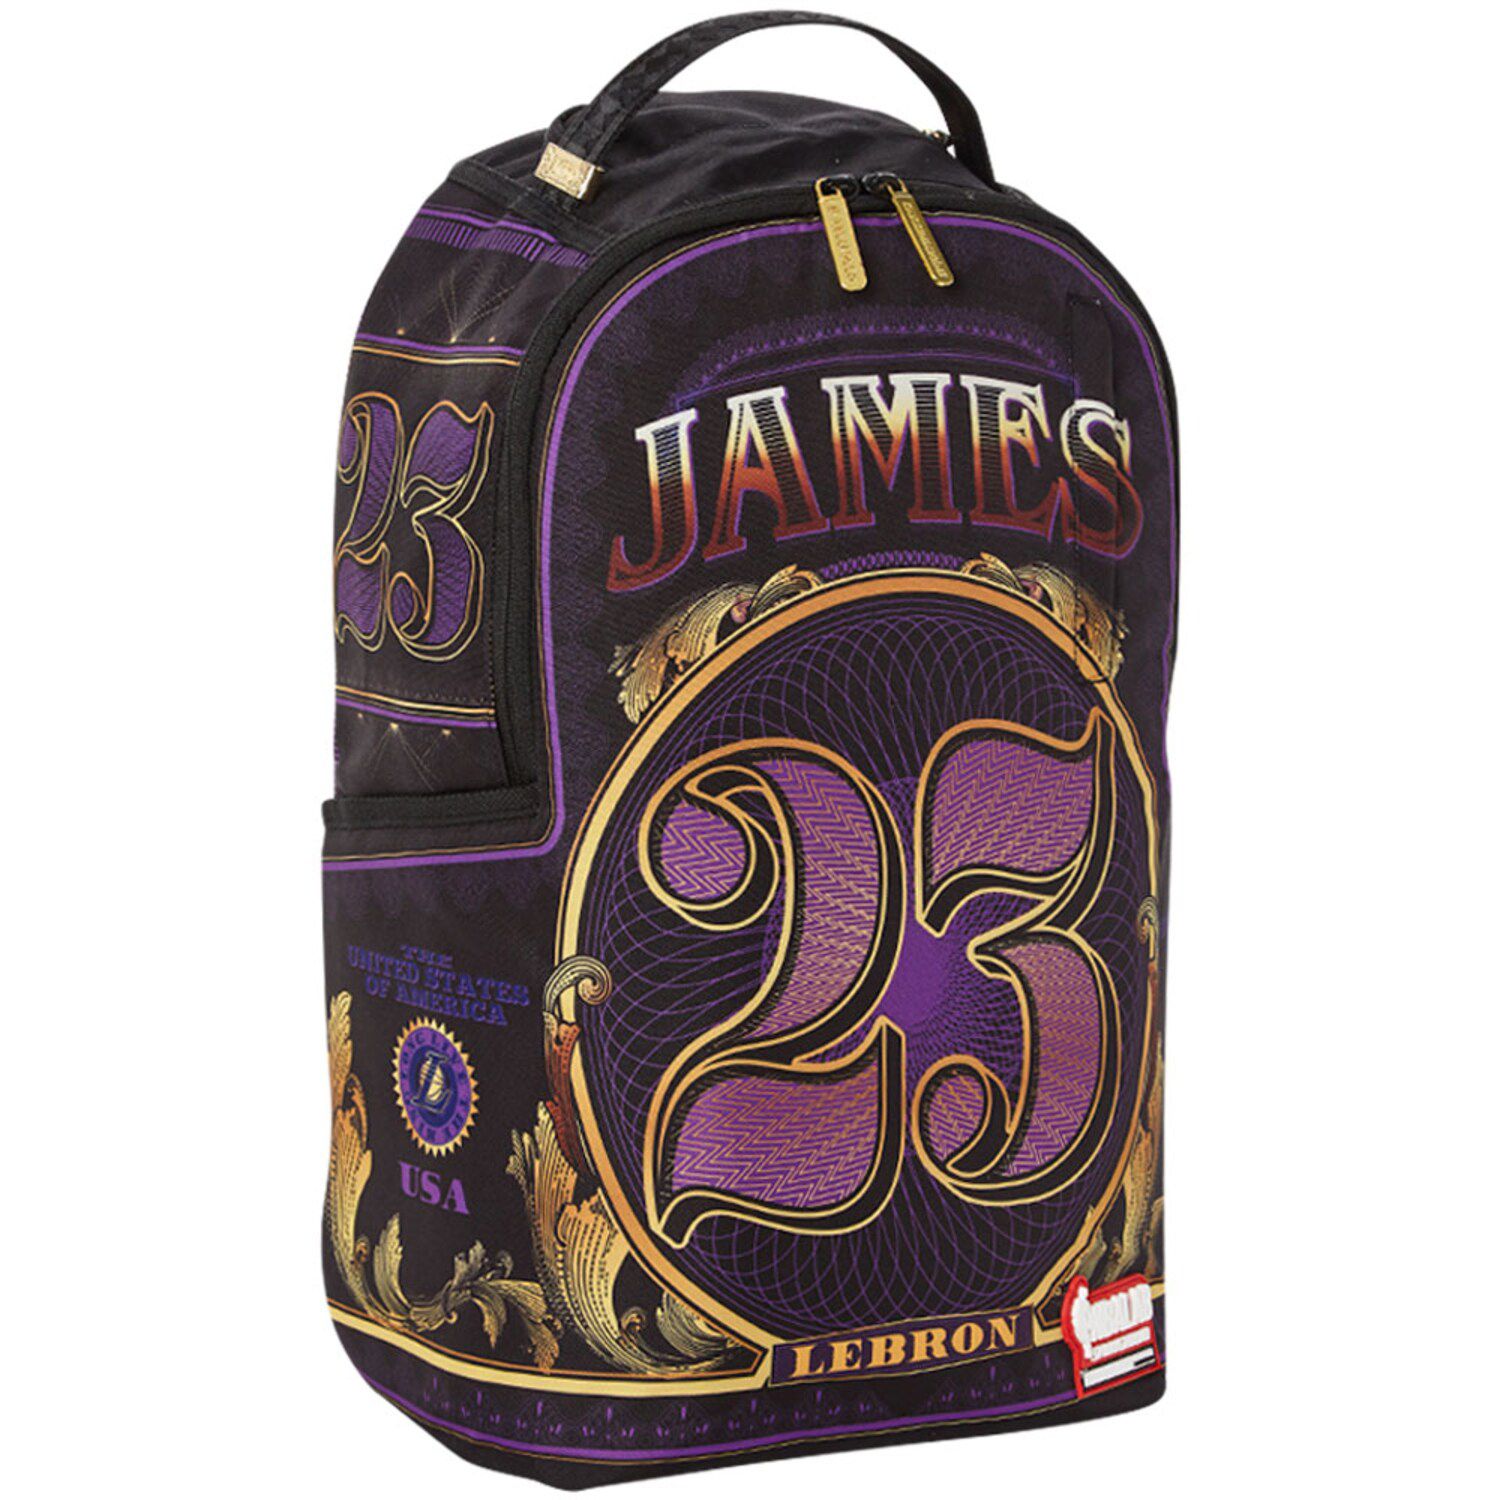 james backpack